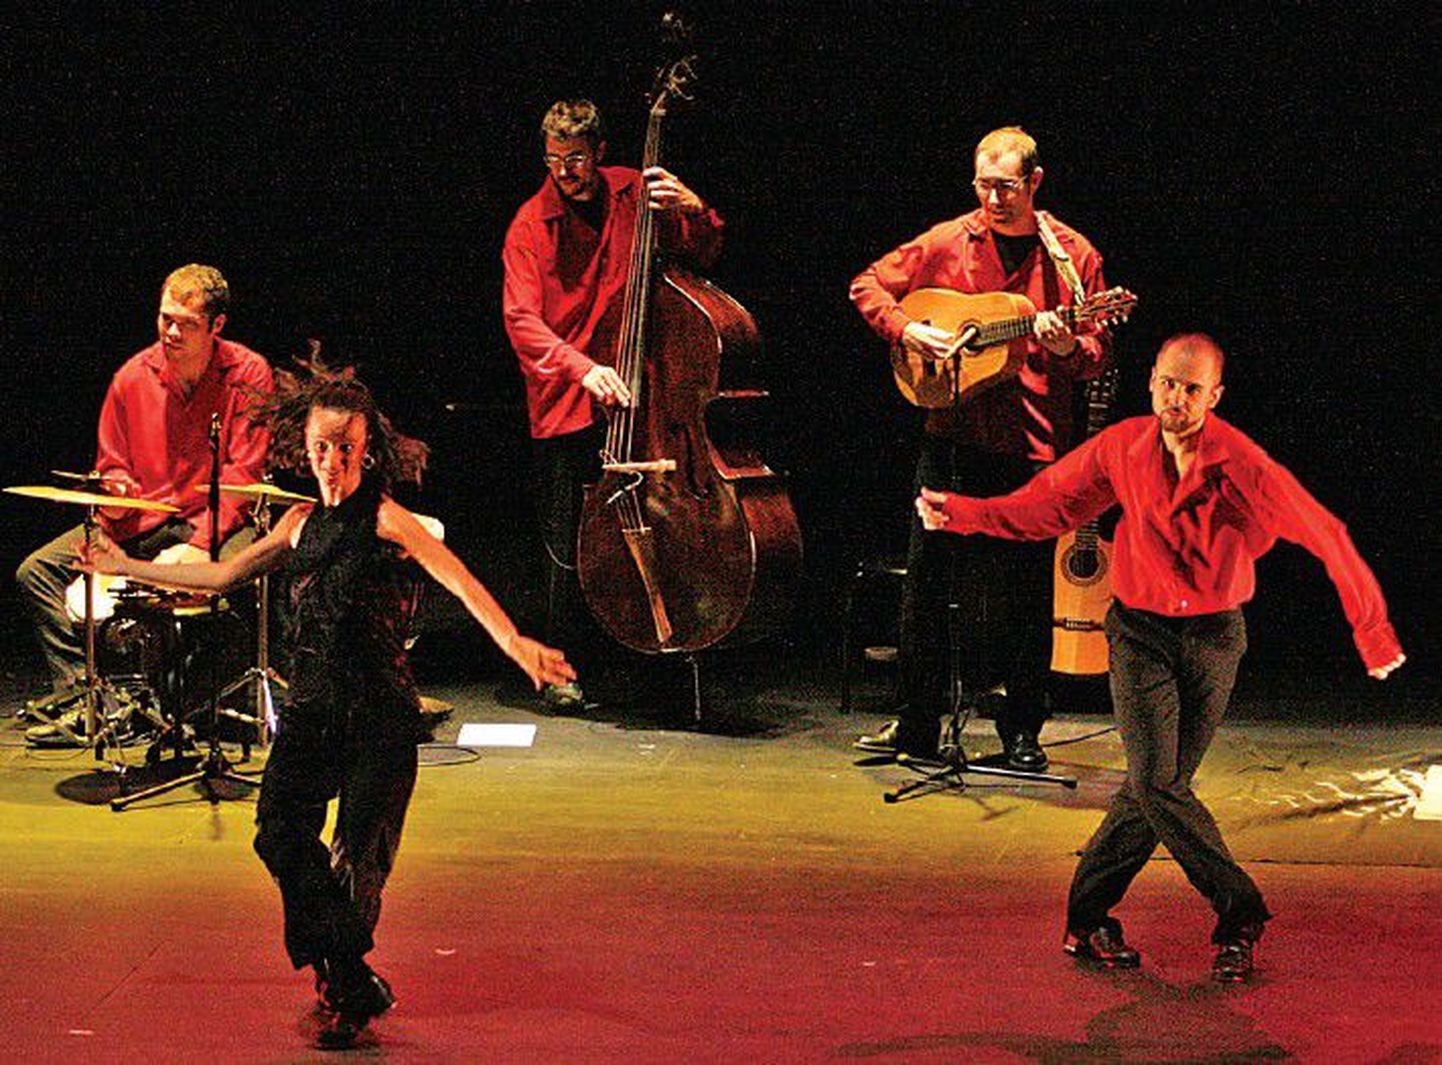 Известные испанские танцоры группы Tap Ole обещают показать в Таллинне яркое и энергичное шоу.